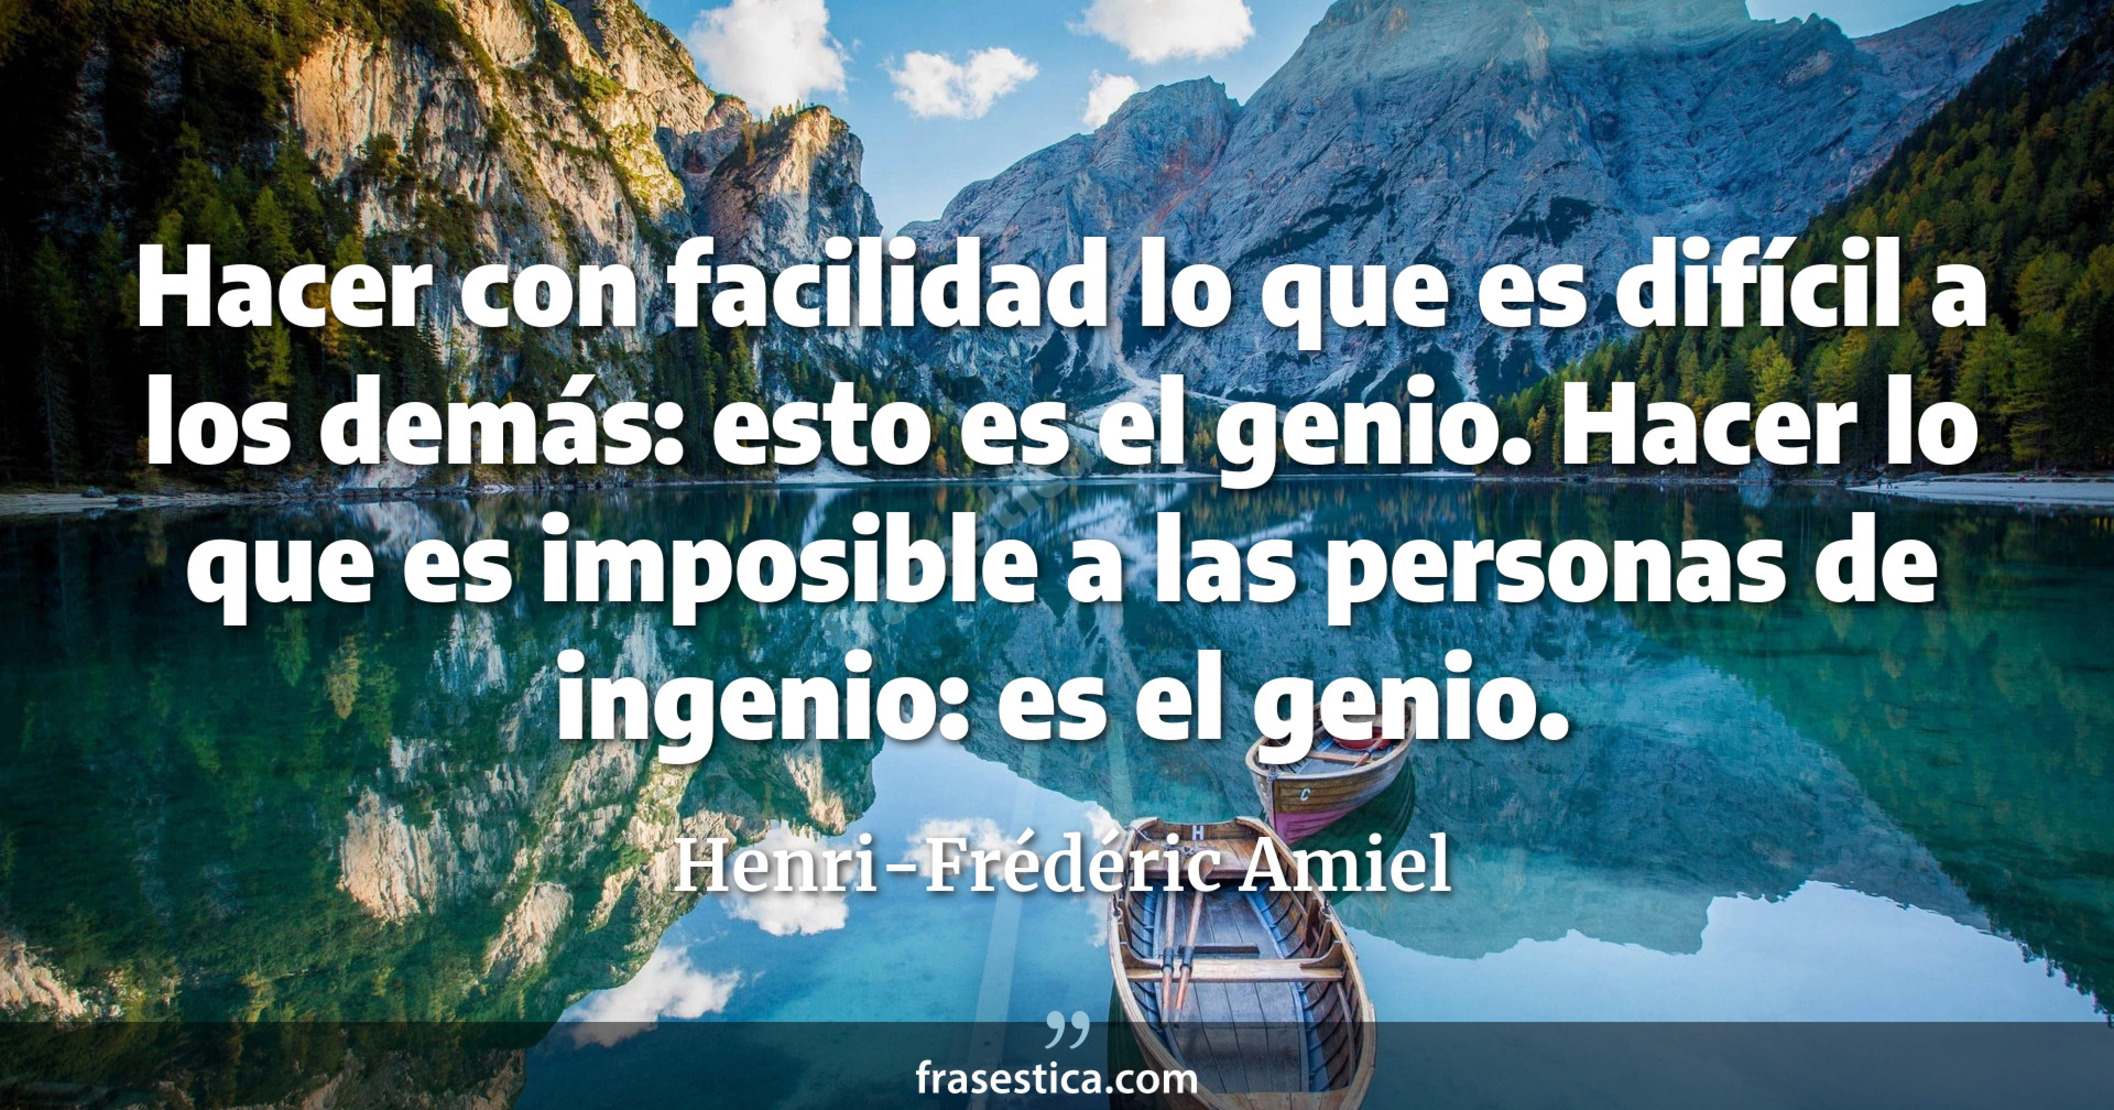 Hacer con facilidad lo que es difícil a los demás: esto es el genio. Hacer lo que es imposible a las personas de ingenio: es el genio. - Henri-Frédéric Amiel